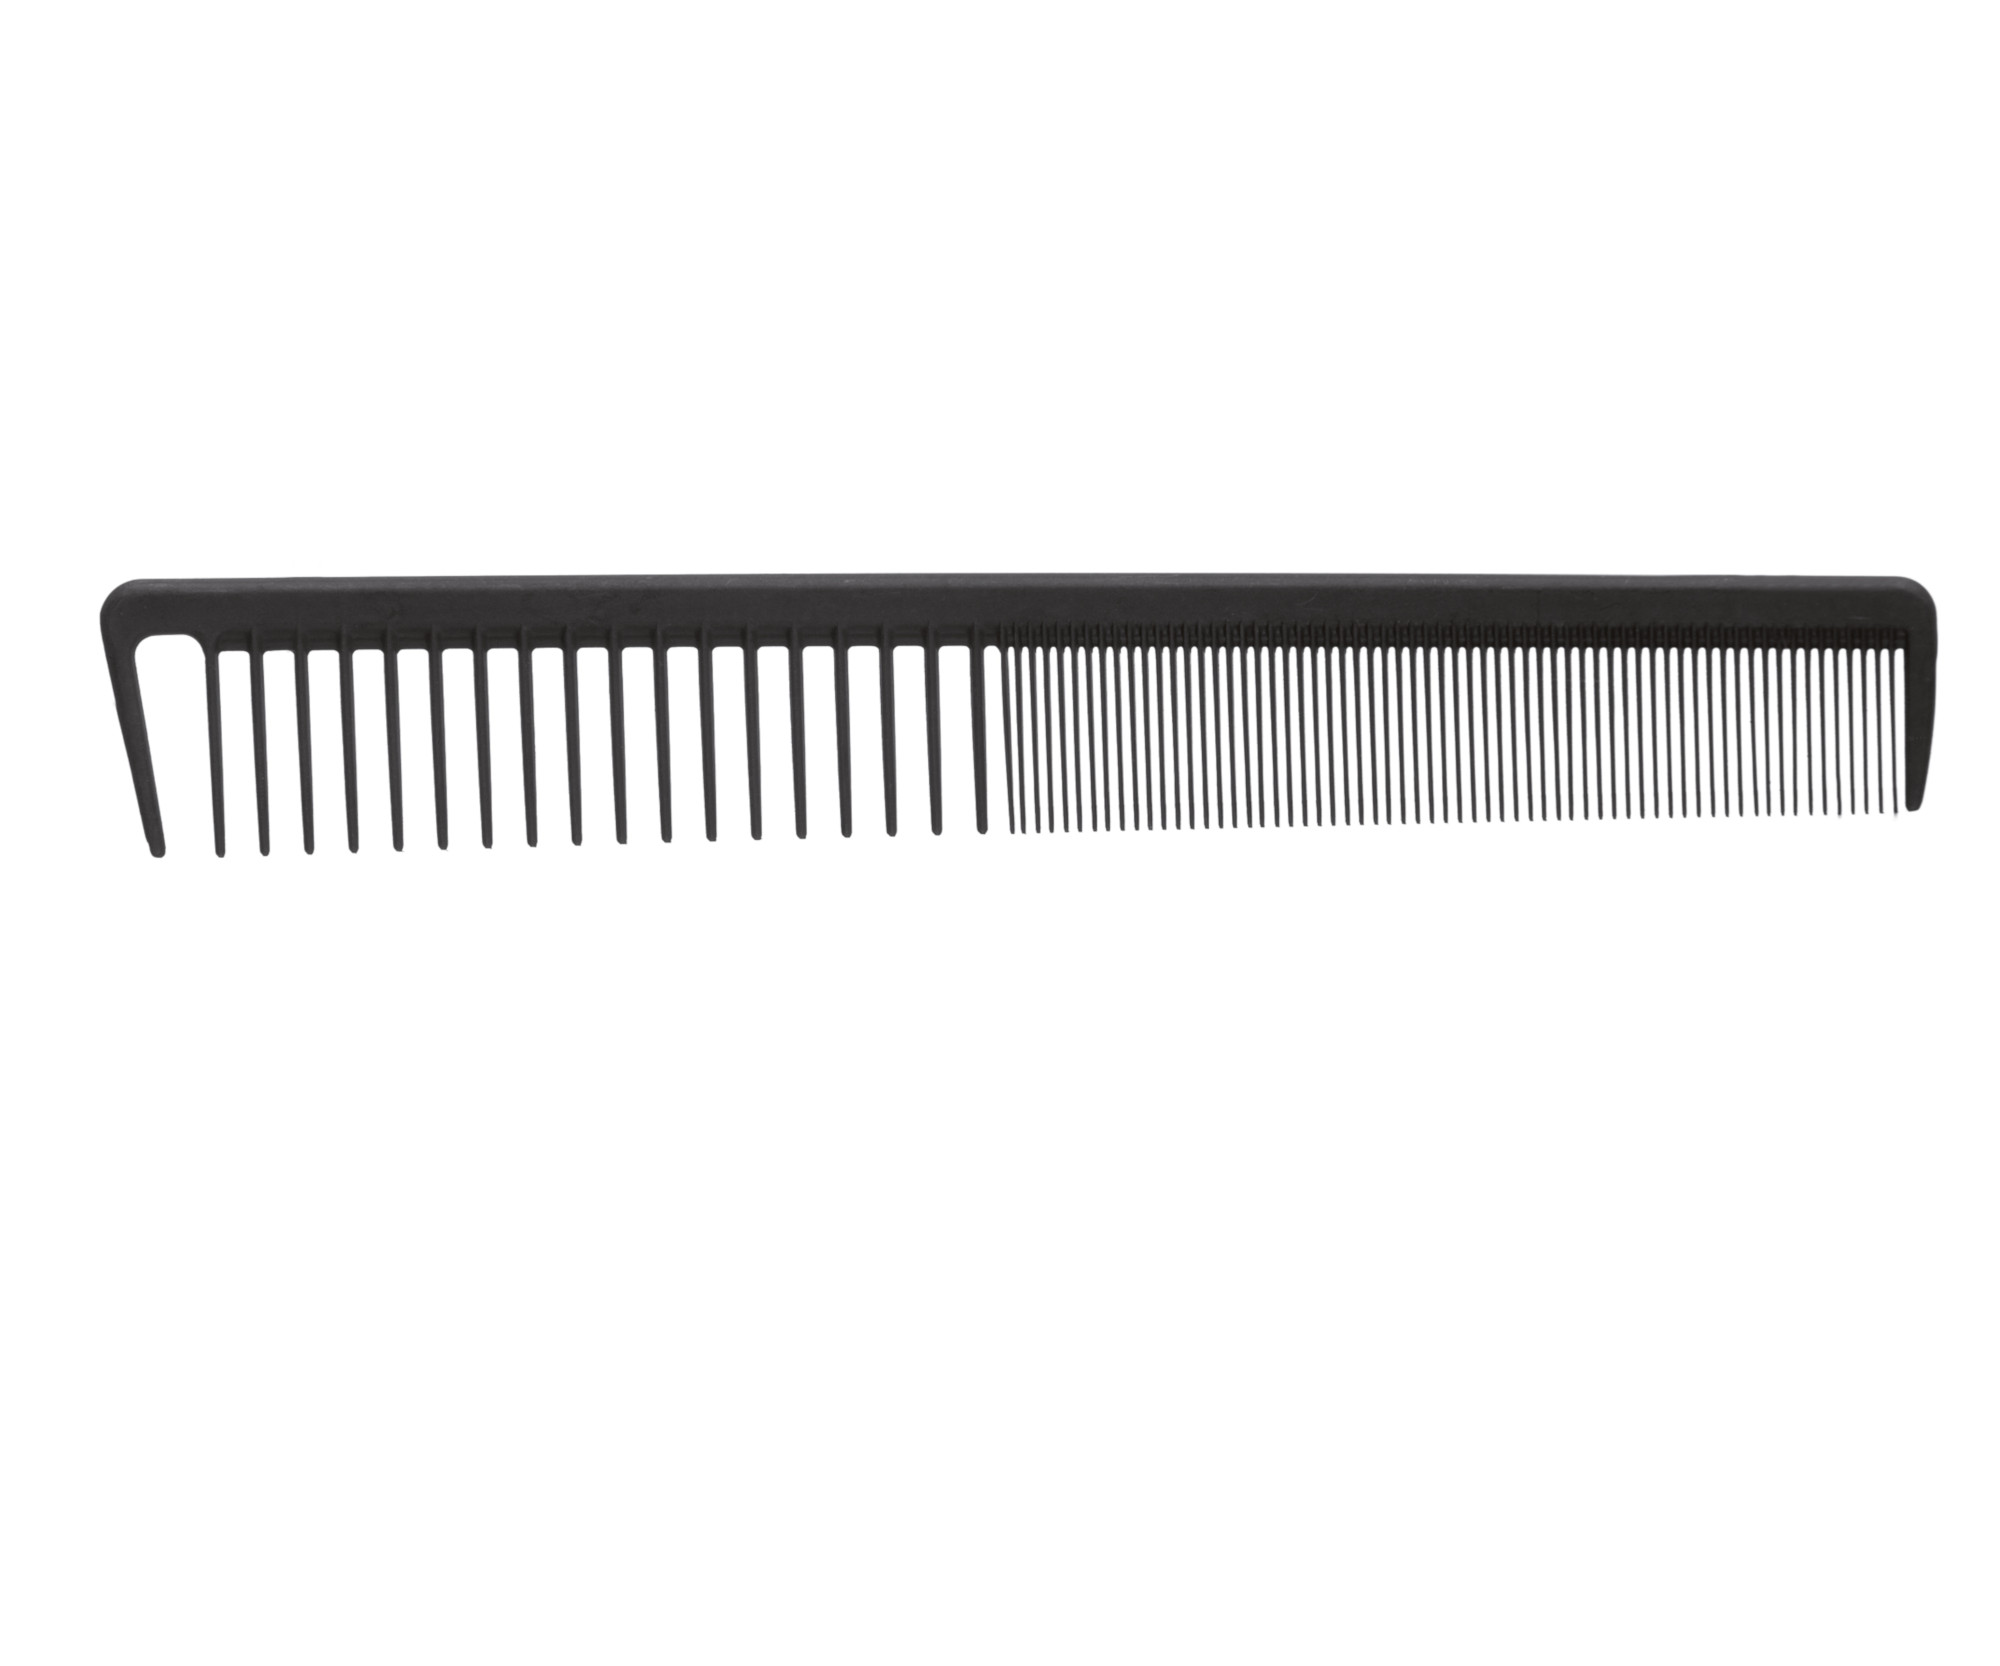 Karbonový hřeben Eurostil Profesional Carbon Combs - 20,6 cm (03407)